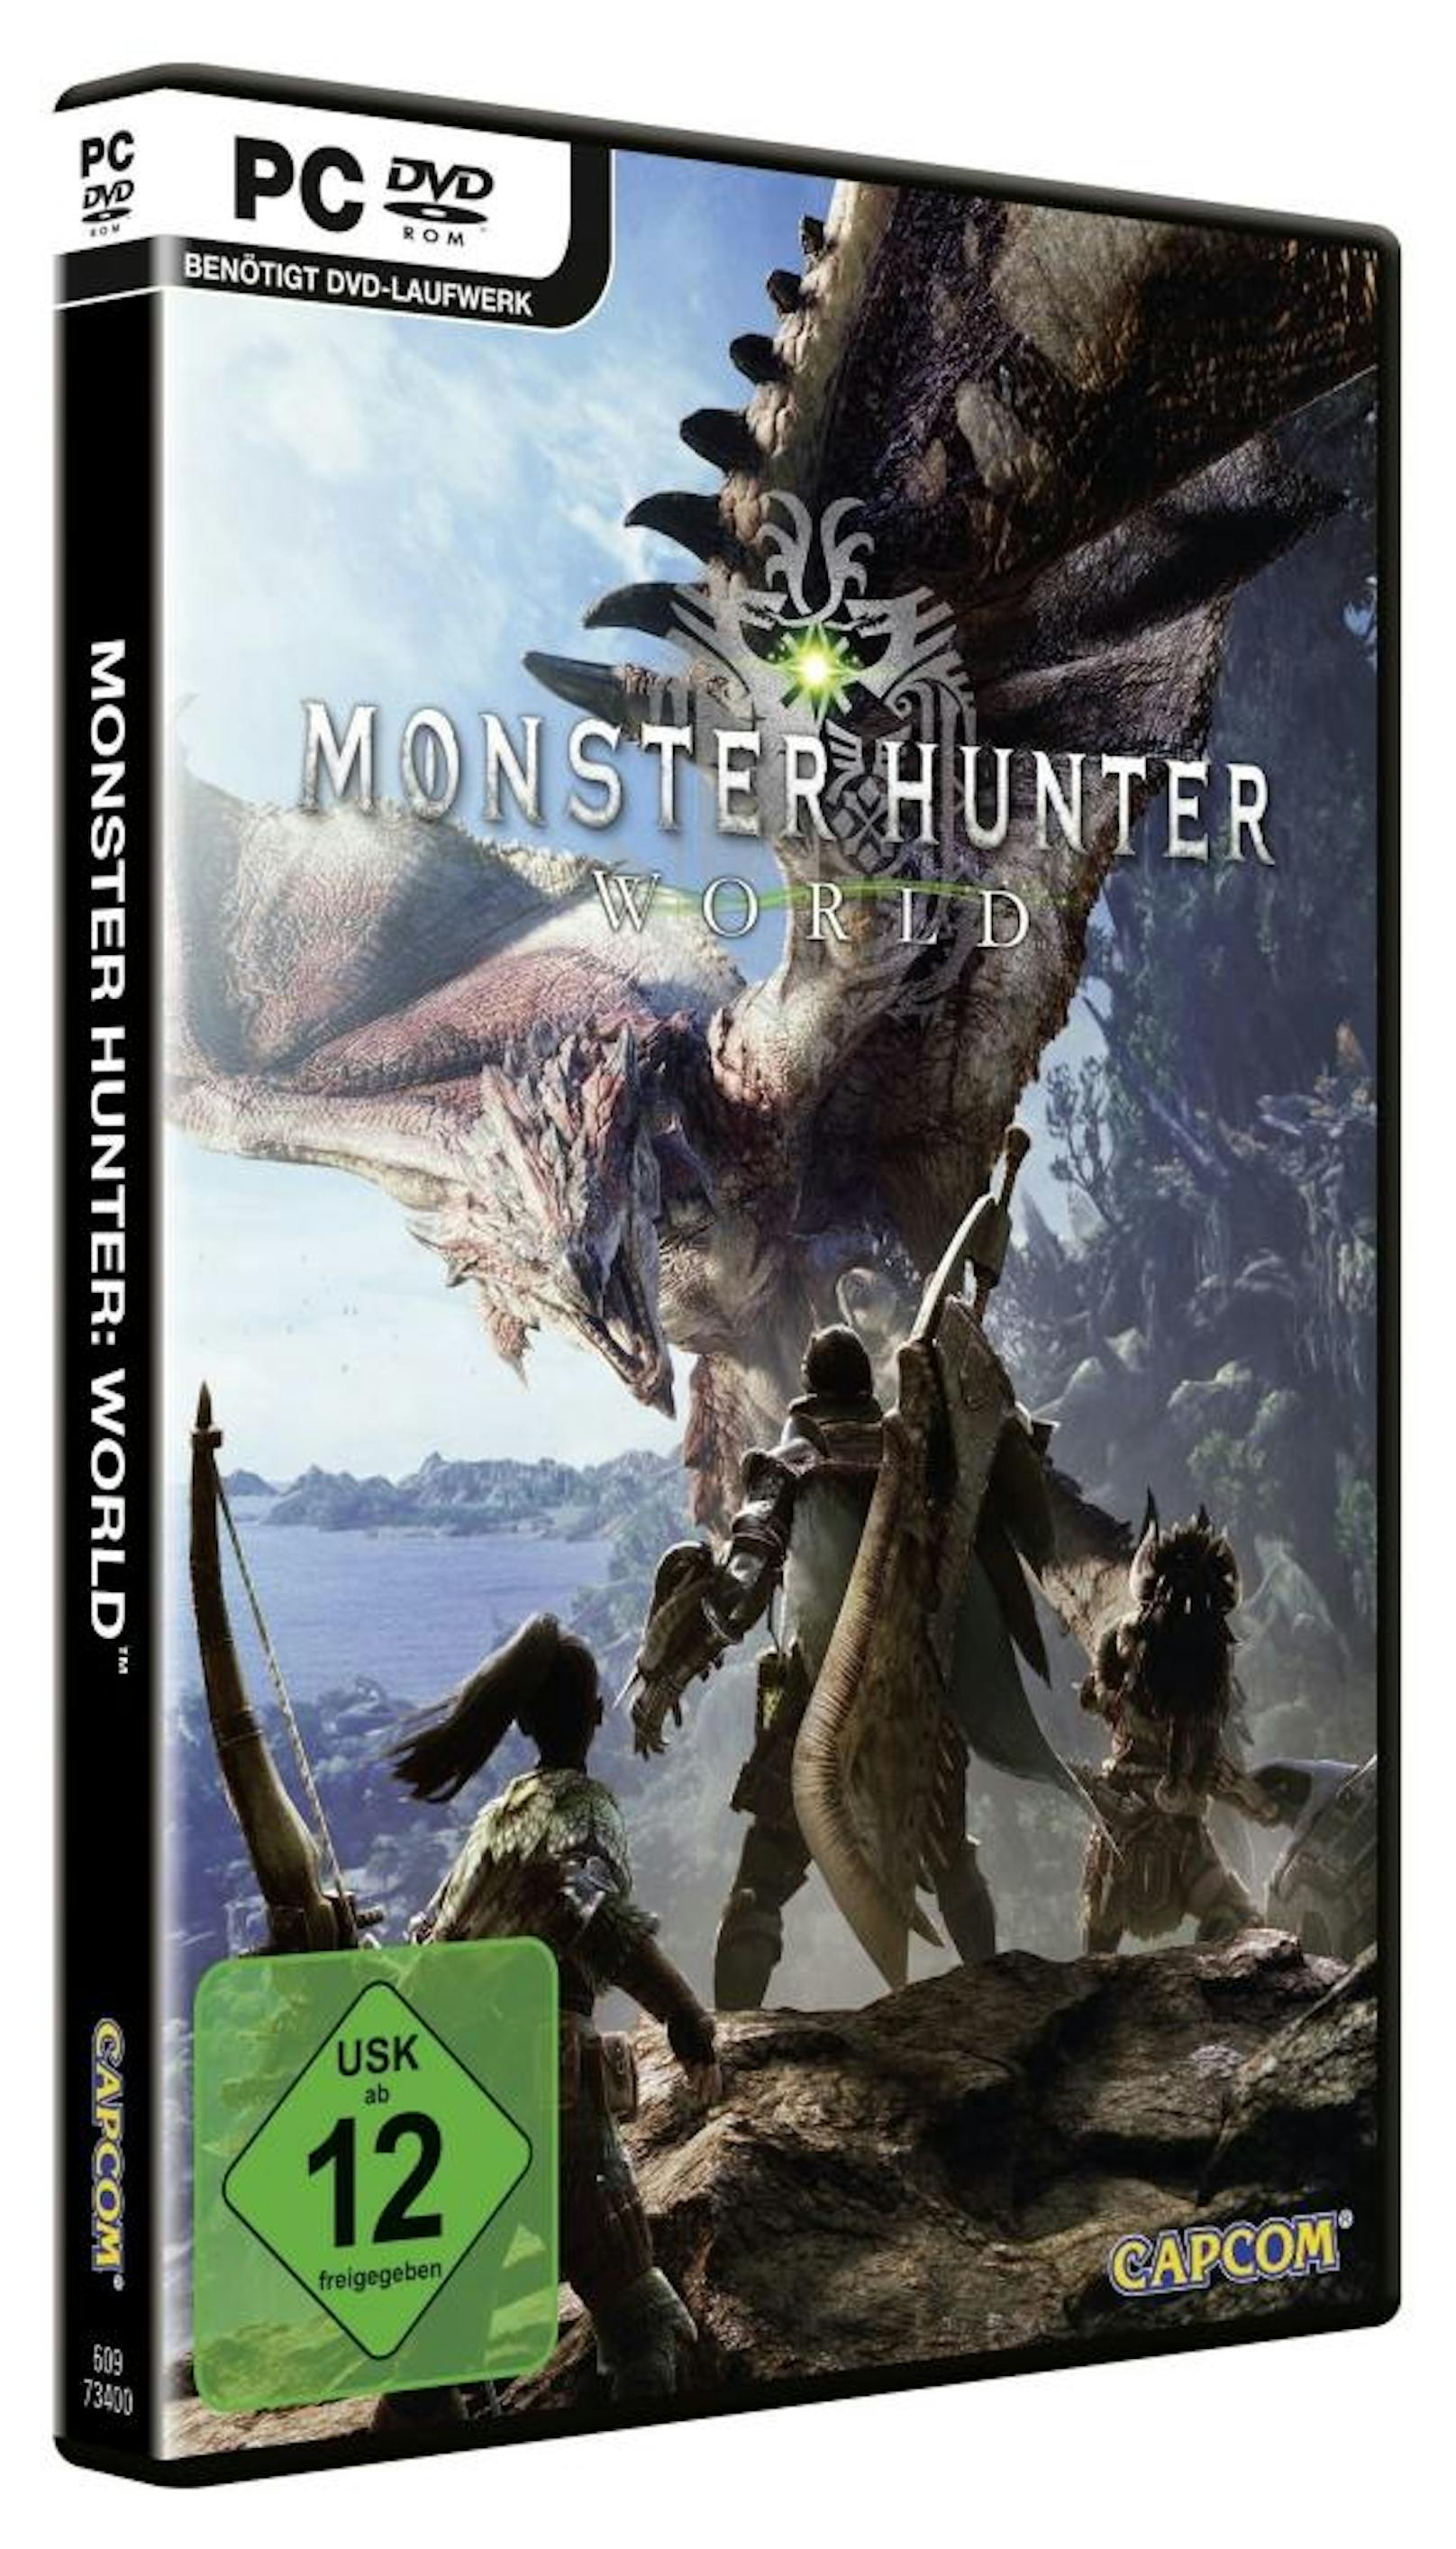 Ab dem 3. September ist die PC-Version von Monster Hunter: World als Box im Handel erhältlich. Der Titel erschien zu Jahresbeginn bereits auf PlayStation 4 und Xbox One. Der Titel schickt Spieler auf die Spur der Drachenältesten, die alle zehn Jahre in ein fernes Land, das nur als die Neue Welt bekannt ist, aufbrechen. Als Mitglied einer Forschungskommission macht man sich auf die Reise in dieses mysteriöse Reich, ergründet Geheimnisse und erlegt jede Menge kolossale Monster.